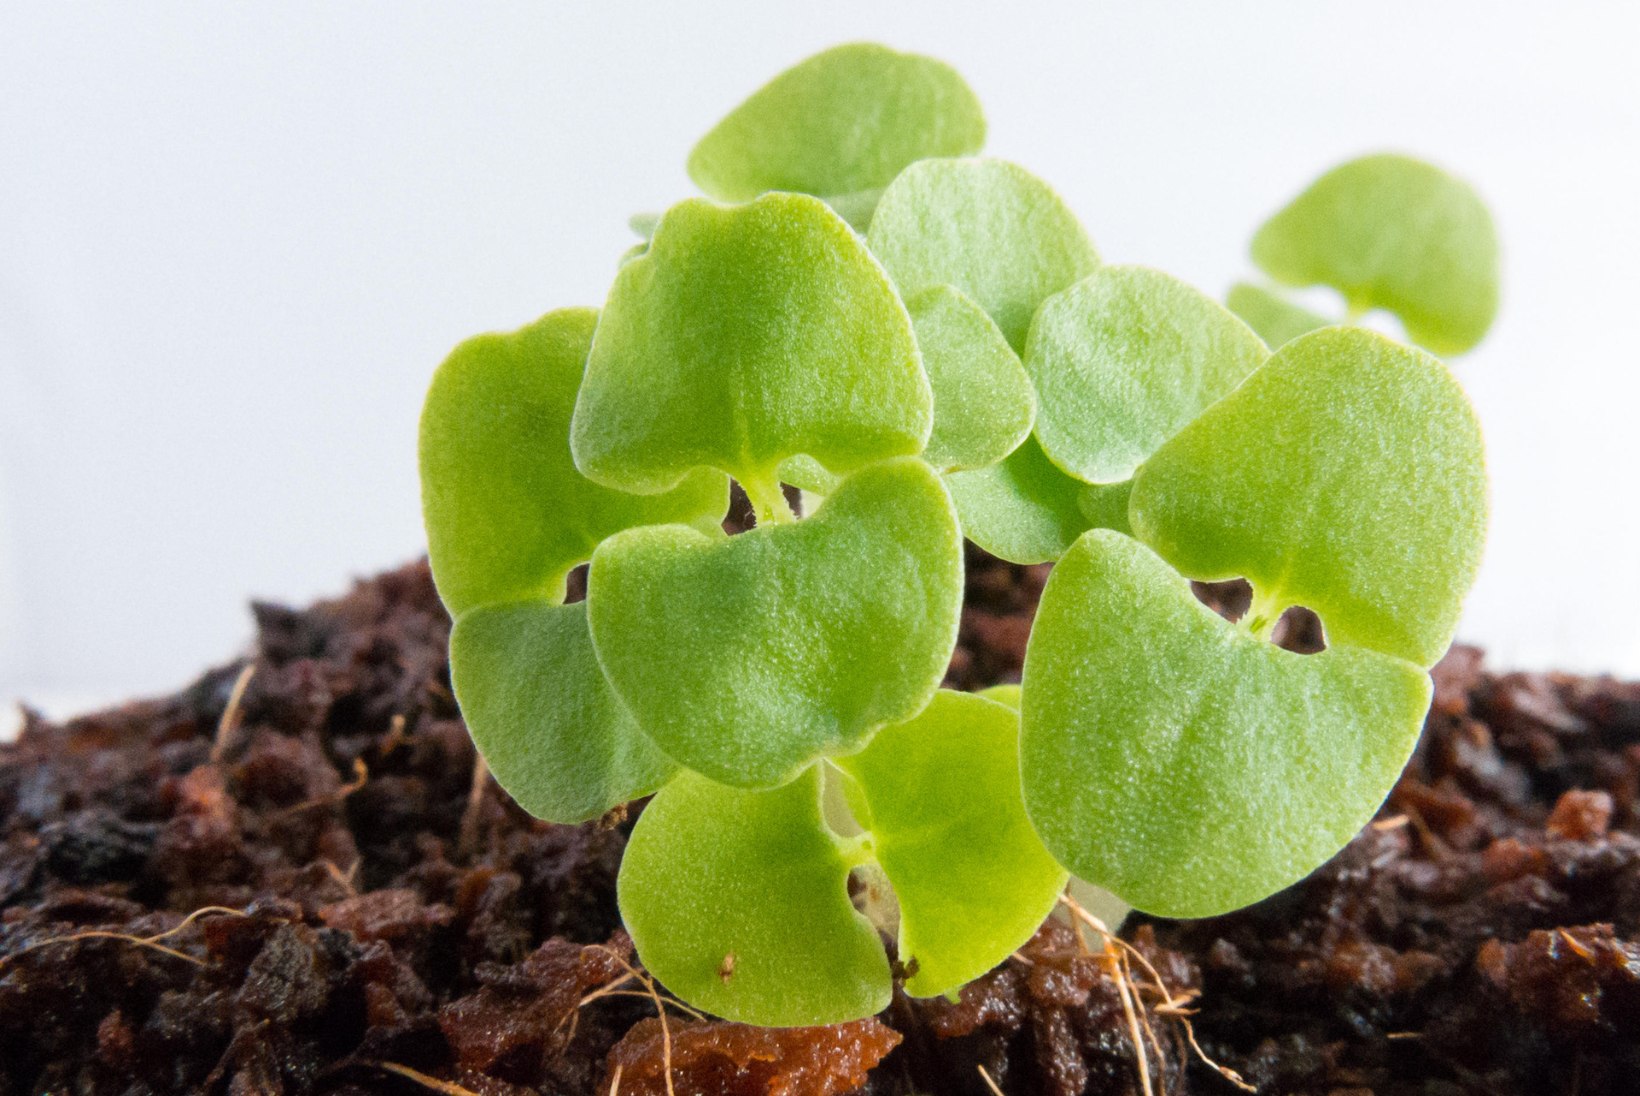 TURGUTA ELUJÕUDU: praegu on õige aeg seemneid varuda! Kuidas neile kasvamiseks hoogu anda?